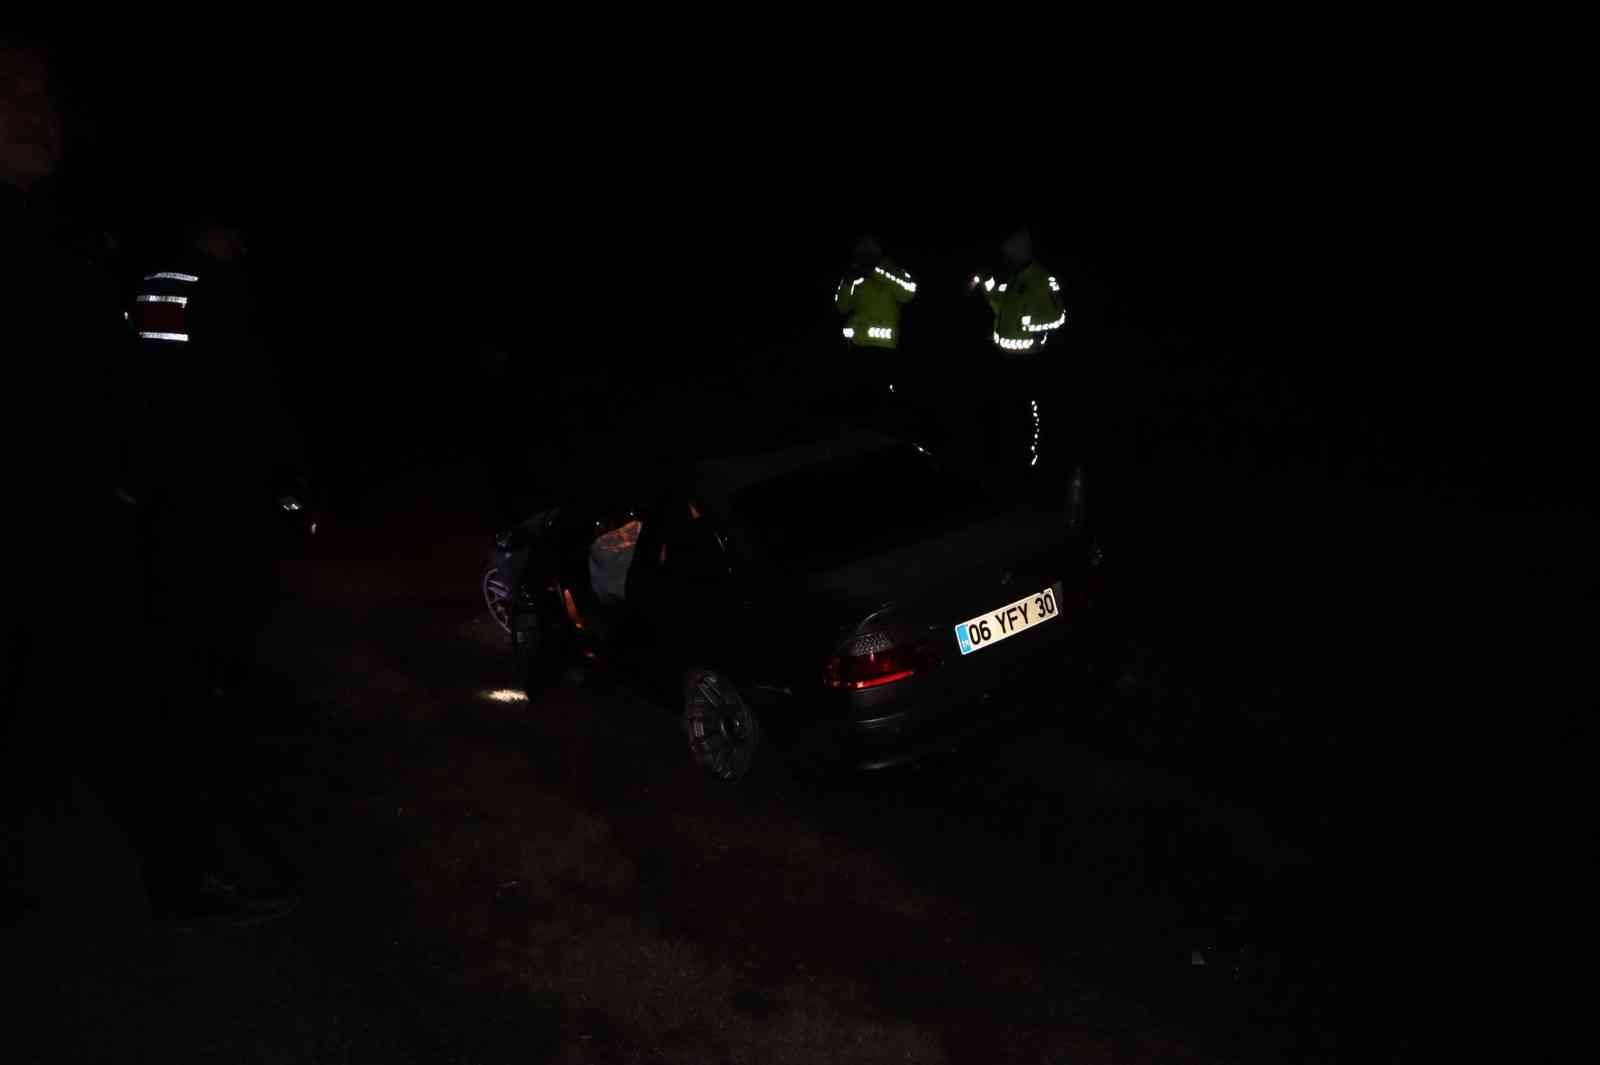 Polatlı’da trafik kazası: 3 yaralı #ankara